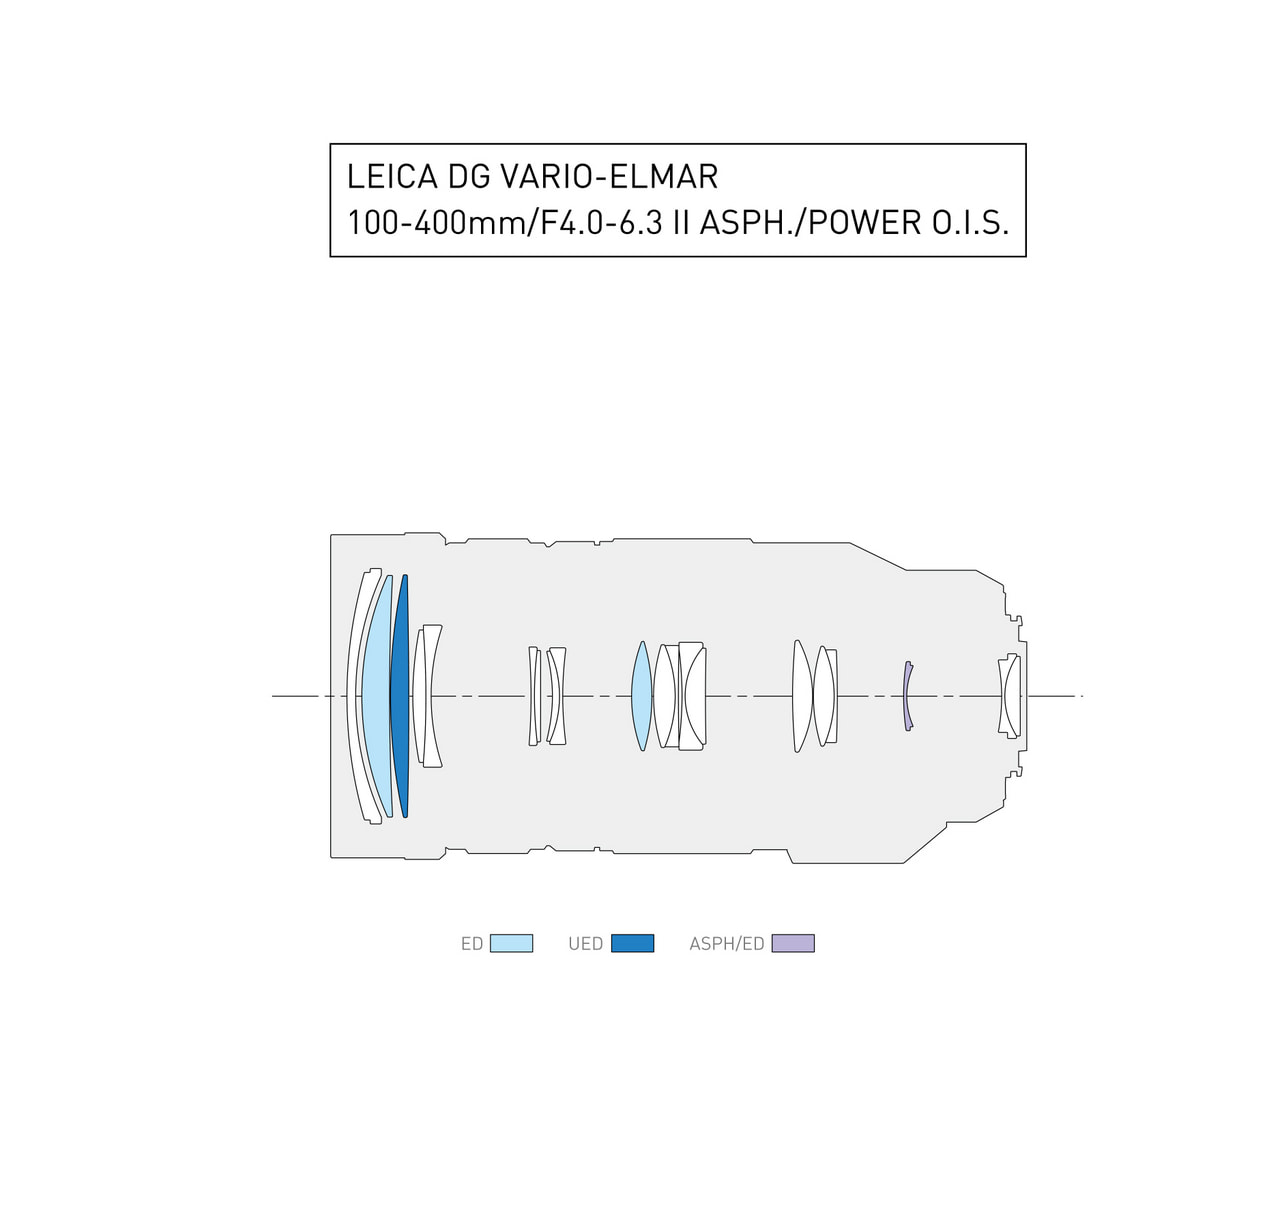 LEICA DG VARIO-ELMAR 100-400mm / F4.0-6.3 II ASPH. / POWER O.I.S.レンズ構成図